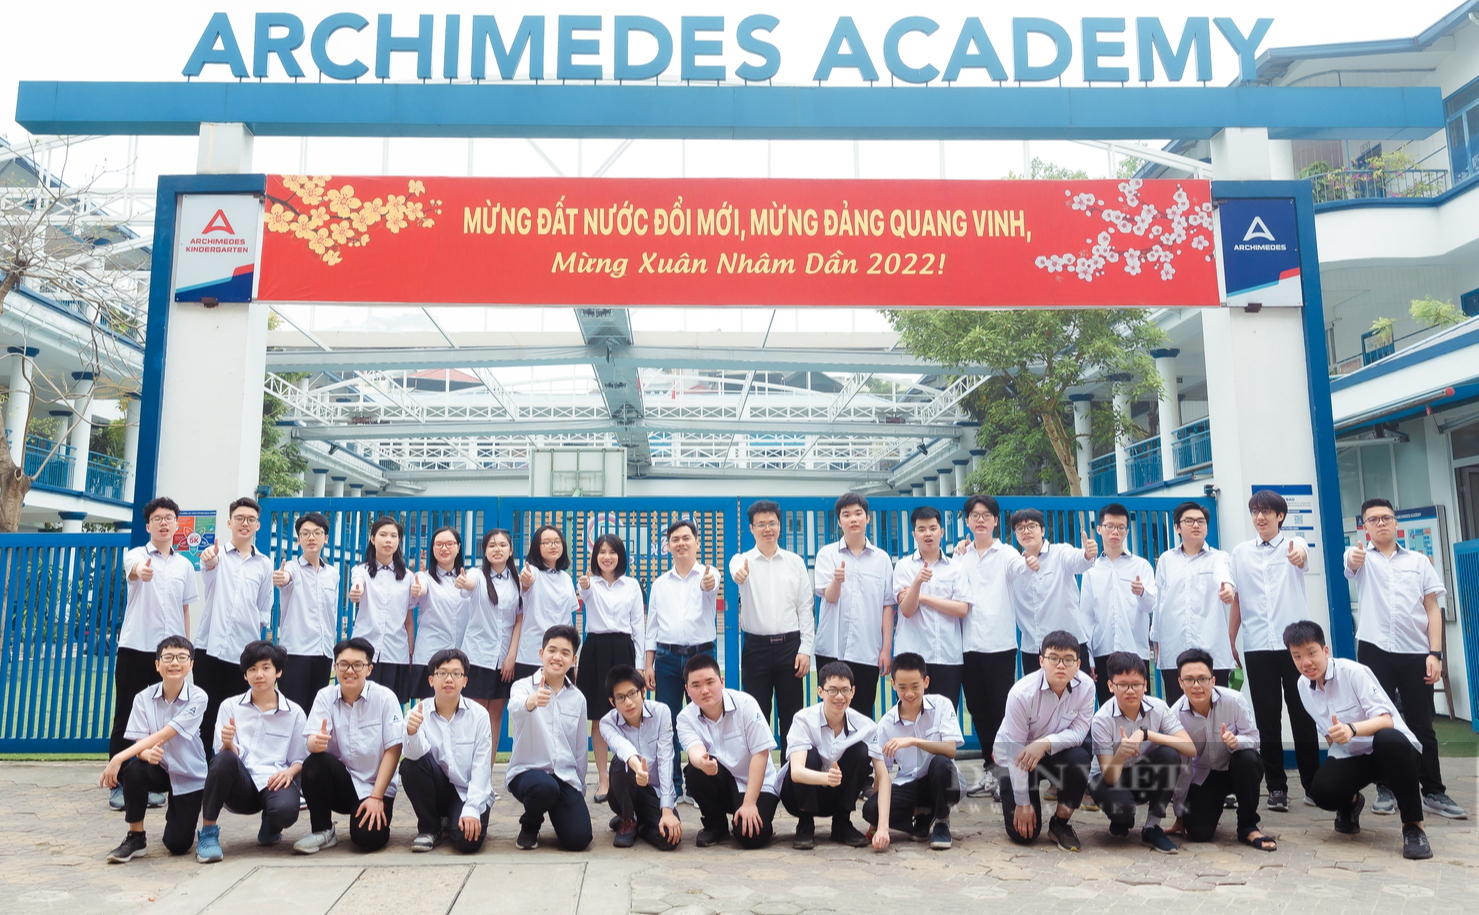 Cả lớp đỗ trường Chuyên ở Hà Nội với nhiều thủ khoa, á khoa: Bí quyết từ người thầy - Ảnh 1.